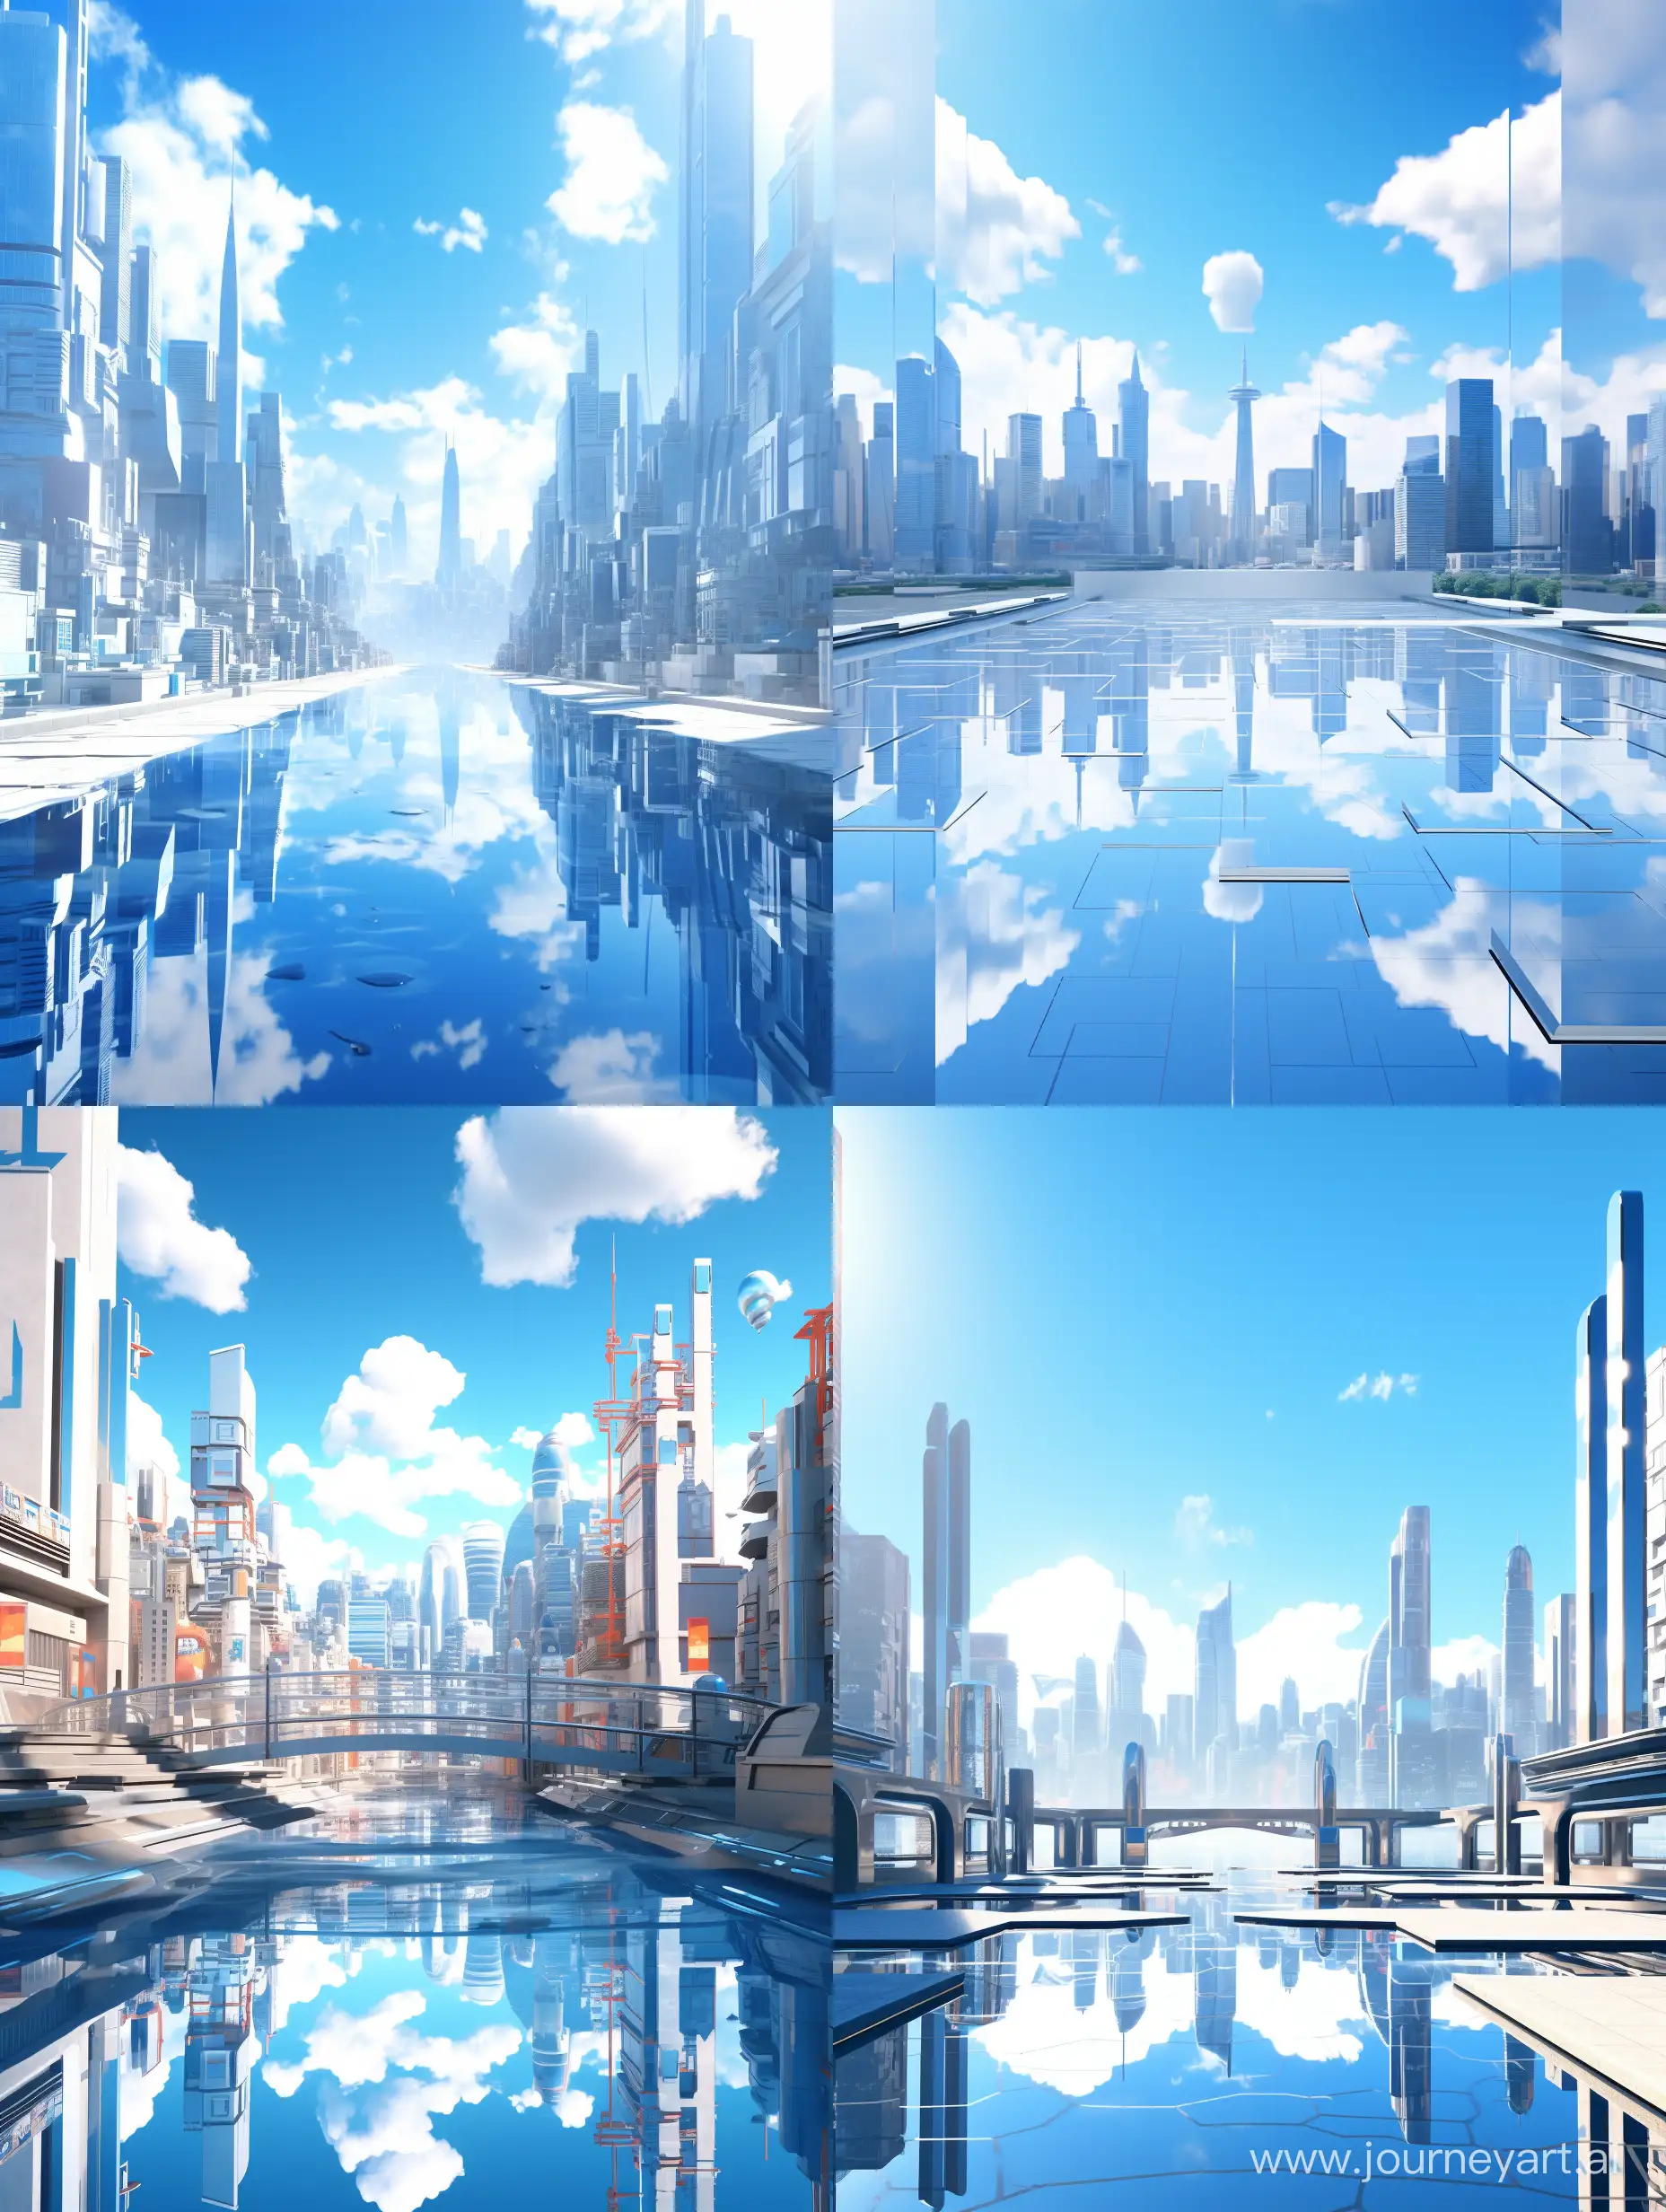 Futuristic-Cityscape-Minimalist-Design-in-Blue-and-White-Colors